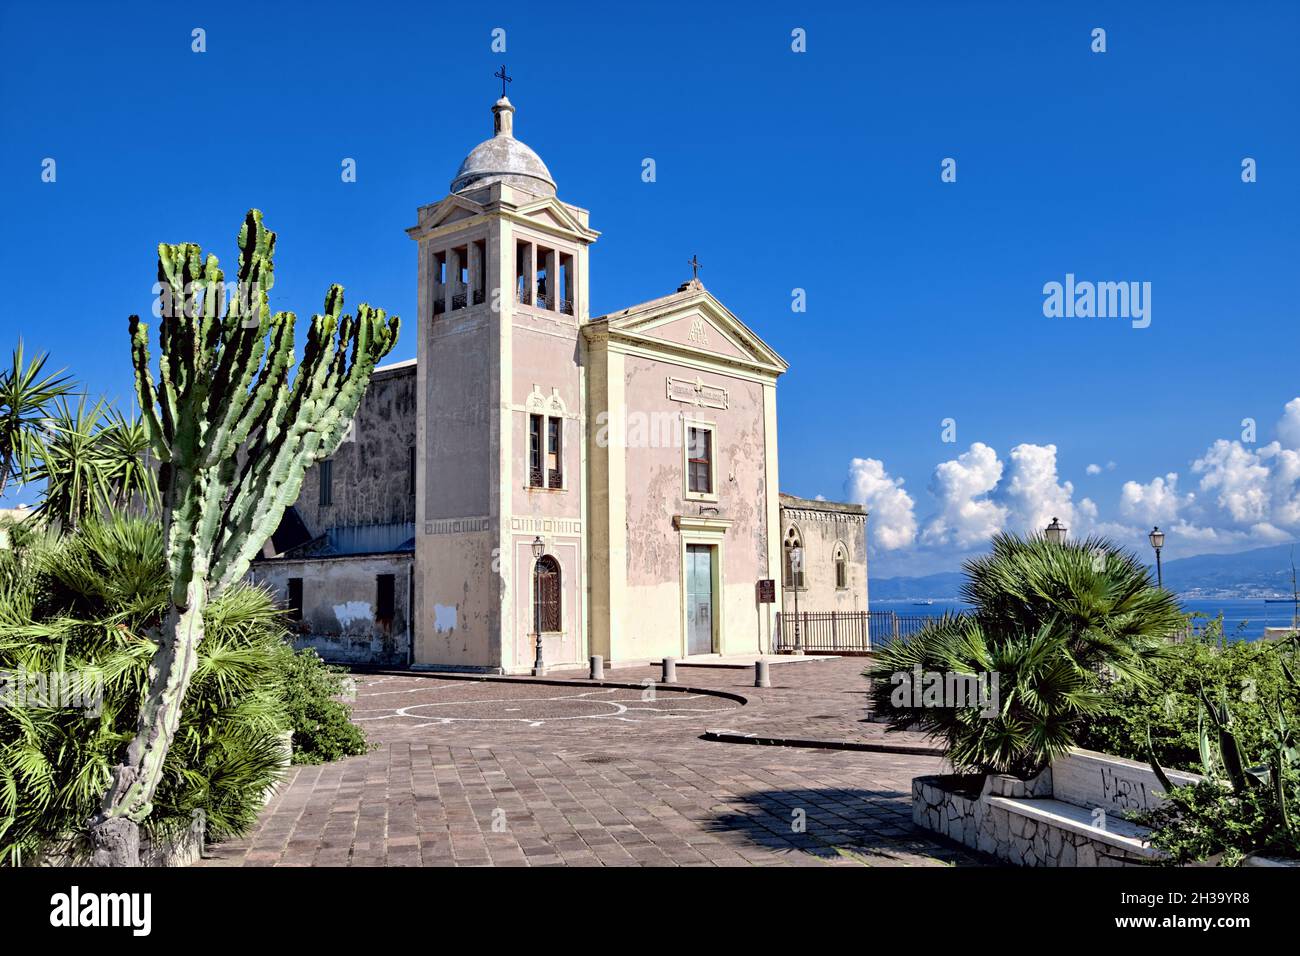 religion and architecture in Sicily church of 'Immacolata Concezione' of Milazzo town Stock Photo